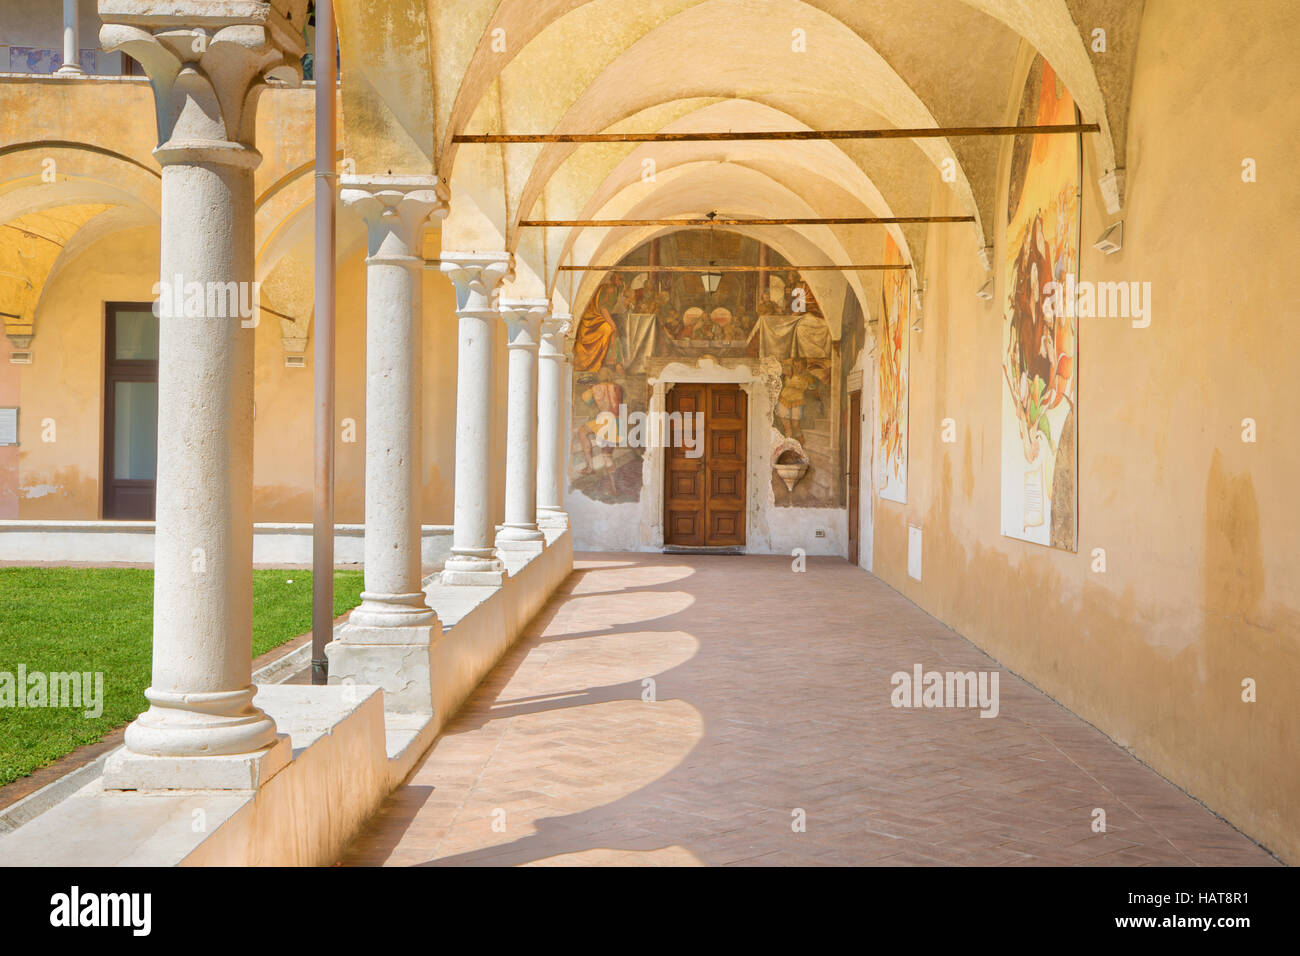 BRESCIA, ITALY - MAY 21, 2016: The atrium of church Chiesa del Santissimo Corpo di Cristo with the renaissance fresco. Stock Photo